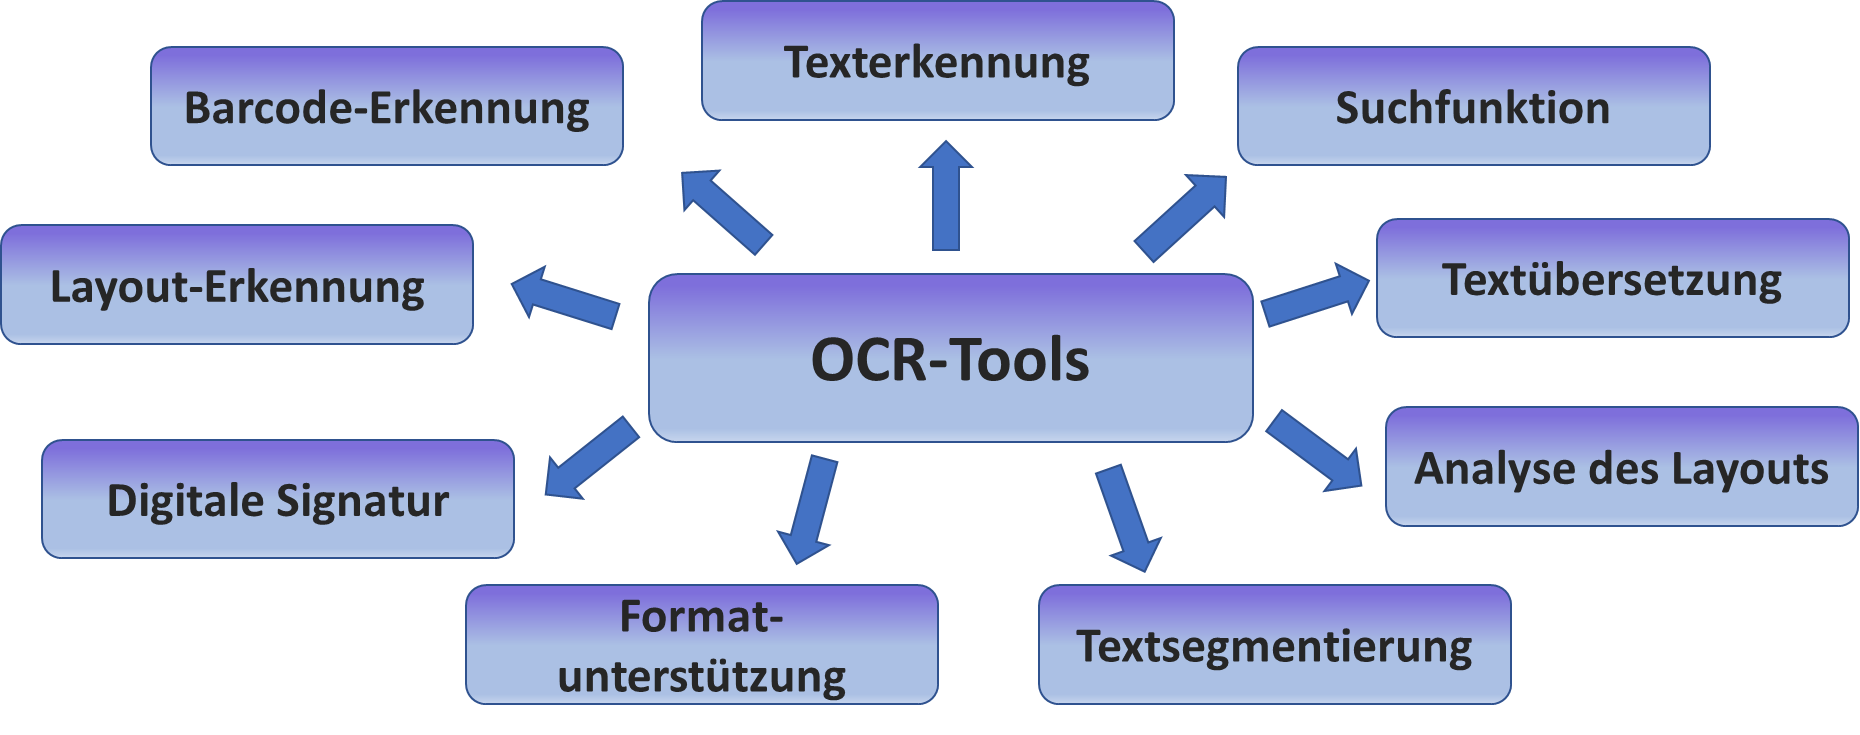 OCR-Tools